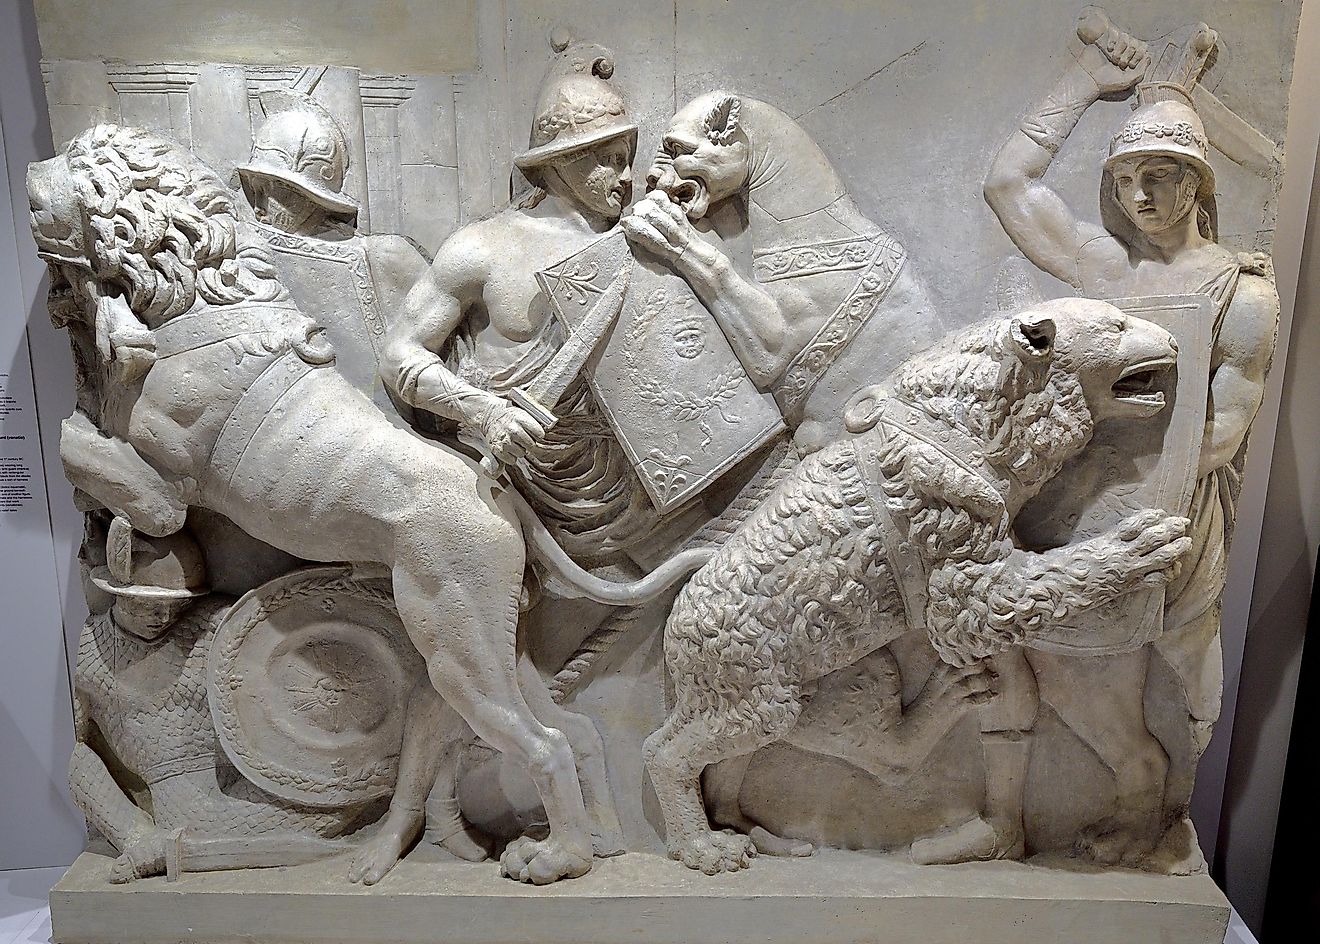 Art depicting gladiator combat